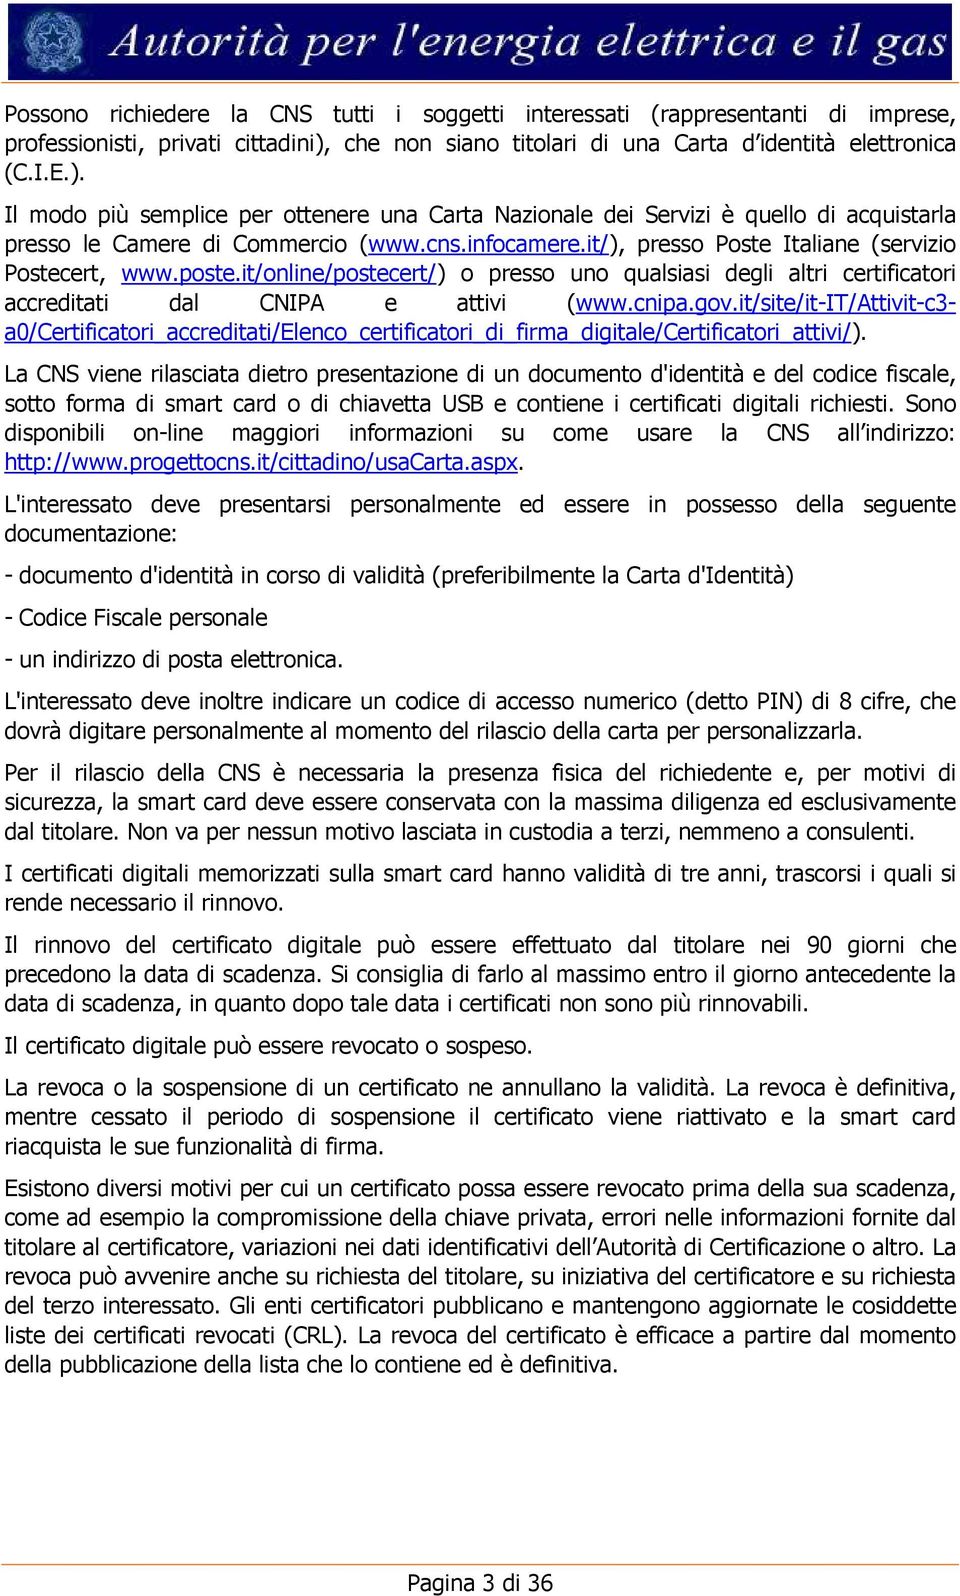 infocamere.it/), presso Poste Italiane (servizio Postecert, www.poste.it/online/postecert/) o presso uno qualsiasi degli altri certificatori accreditati dal CNIPA e attivi (www.cnipa.gov.